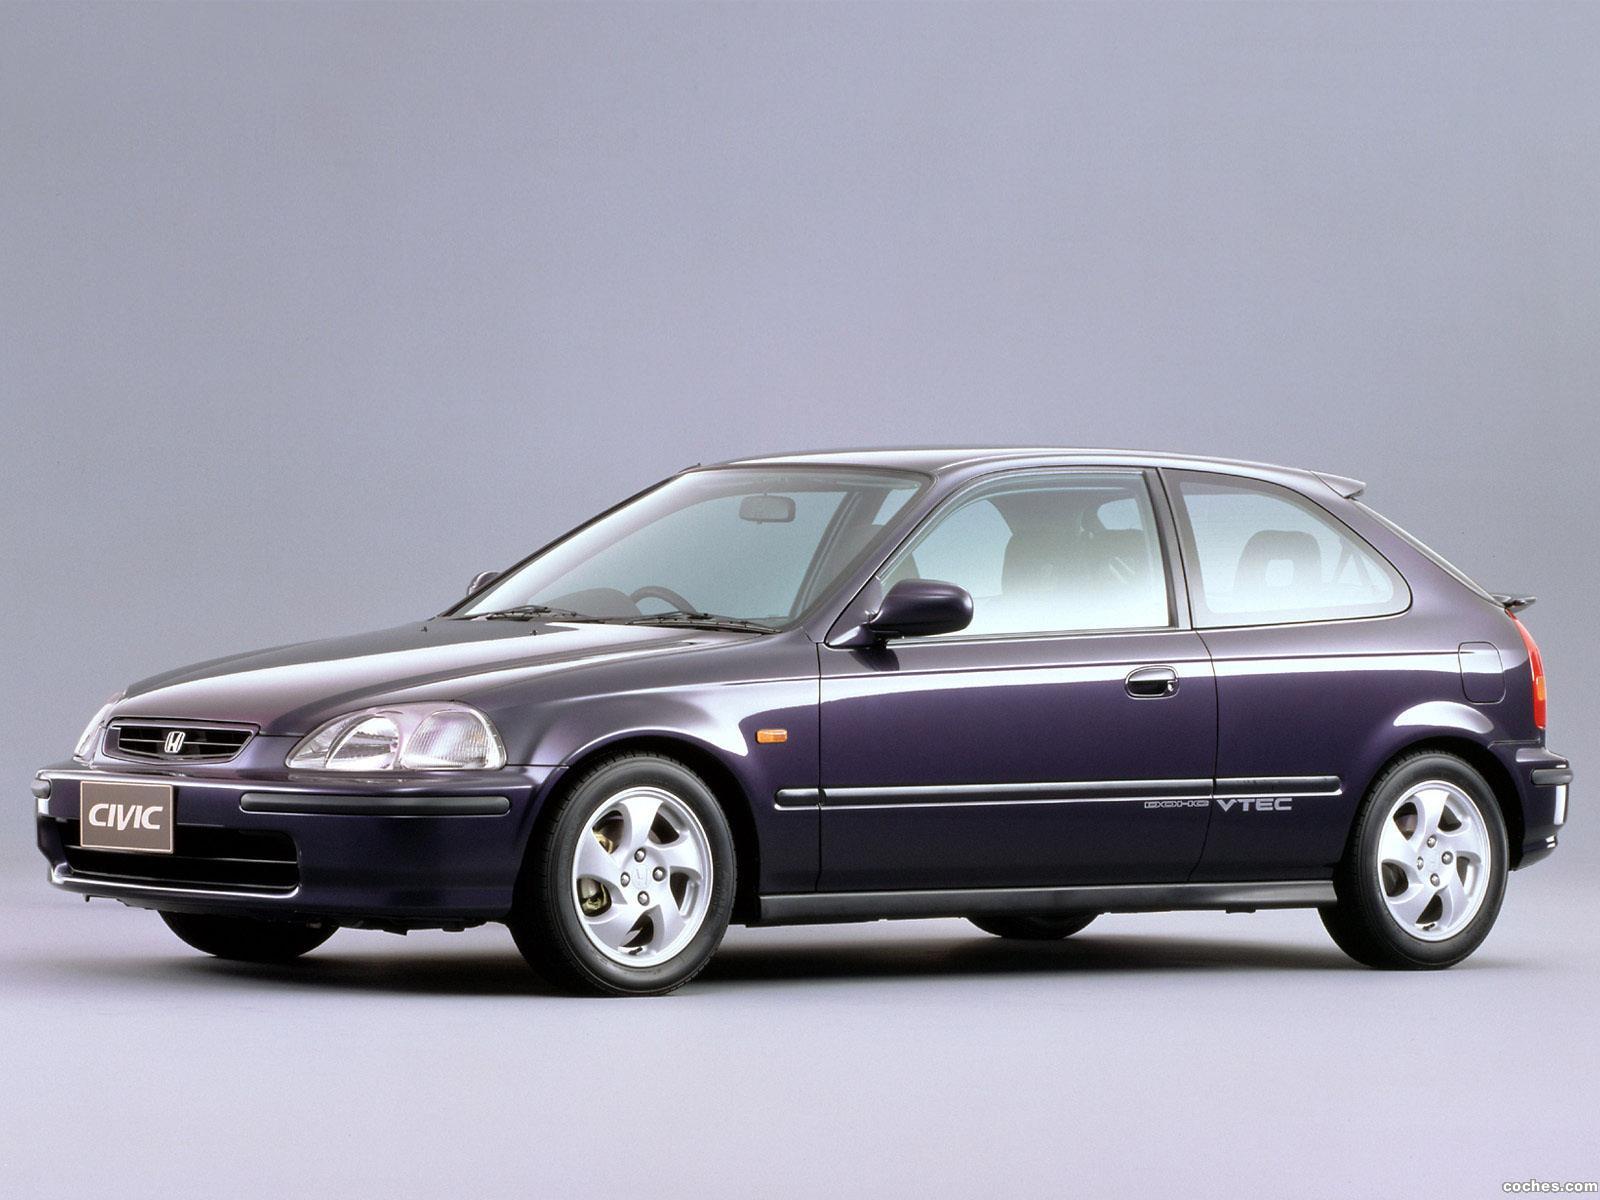 honda_civic-sir-ii-hatchback-1995-97_r4